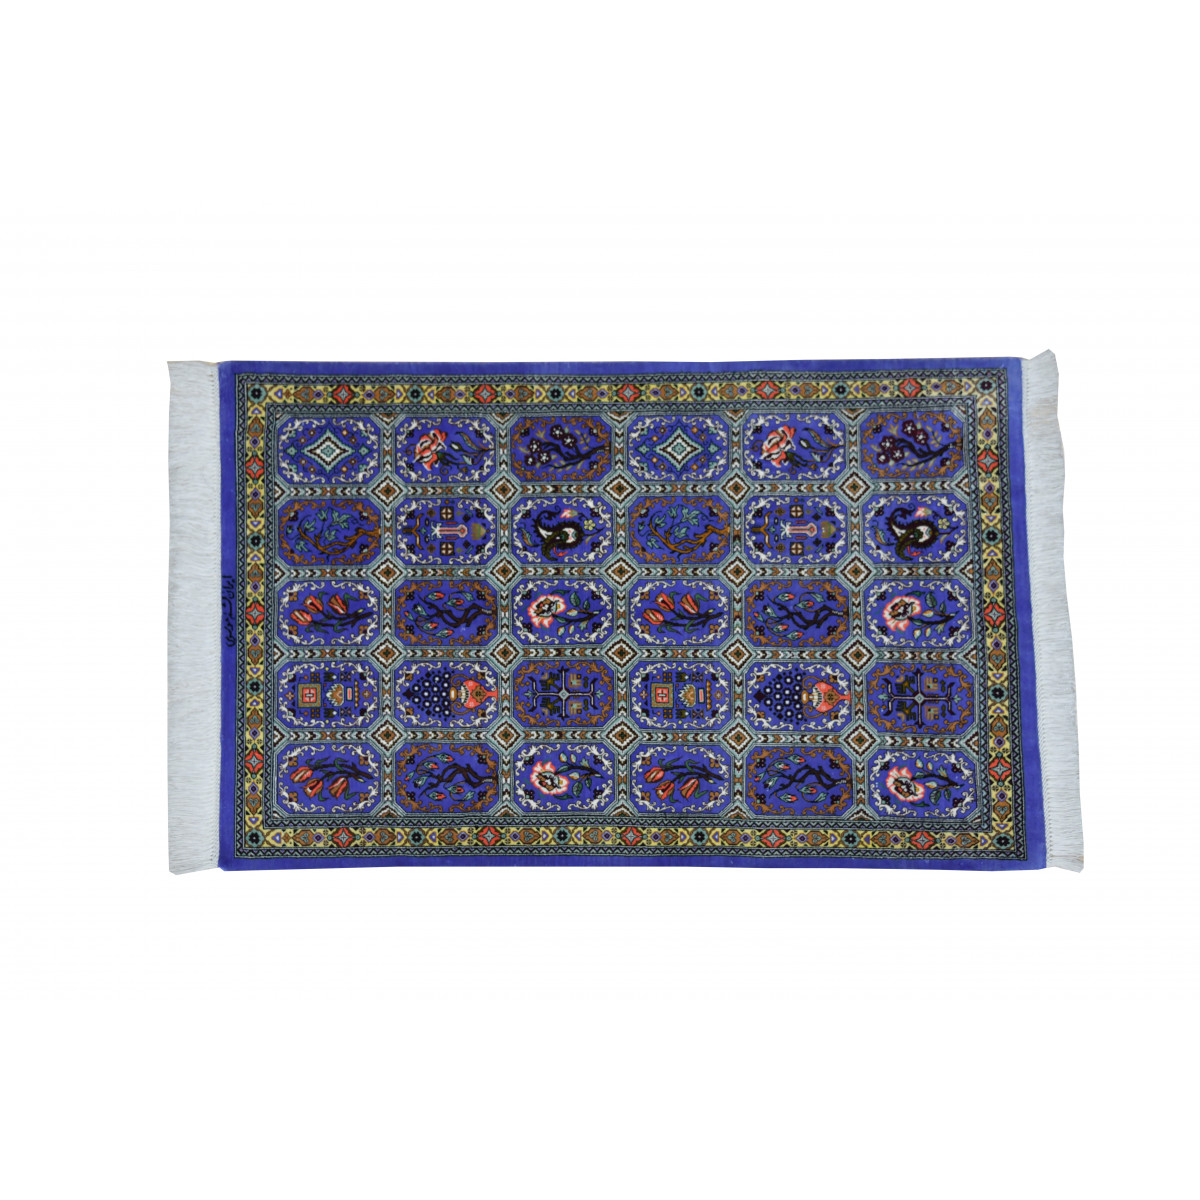 キミヤペルシャ絨毯ギャラリー | KIMIYA PERSIAN CARPET GALLERYケシュ